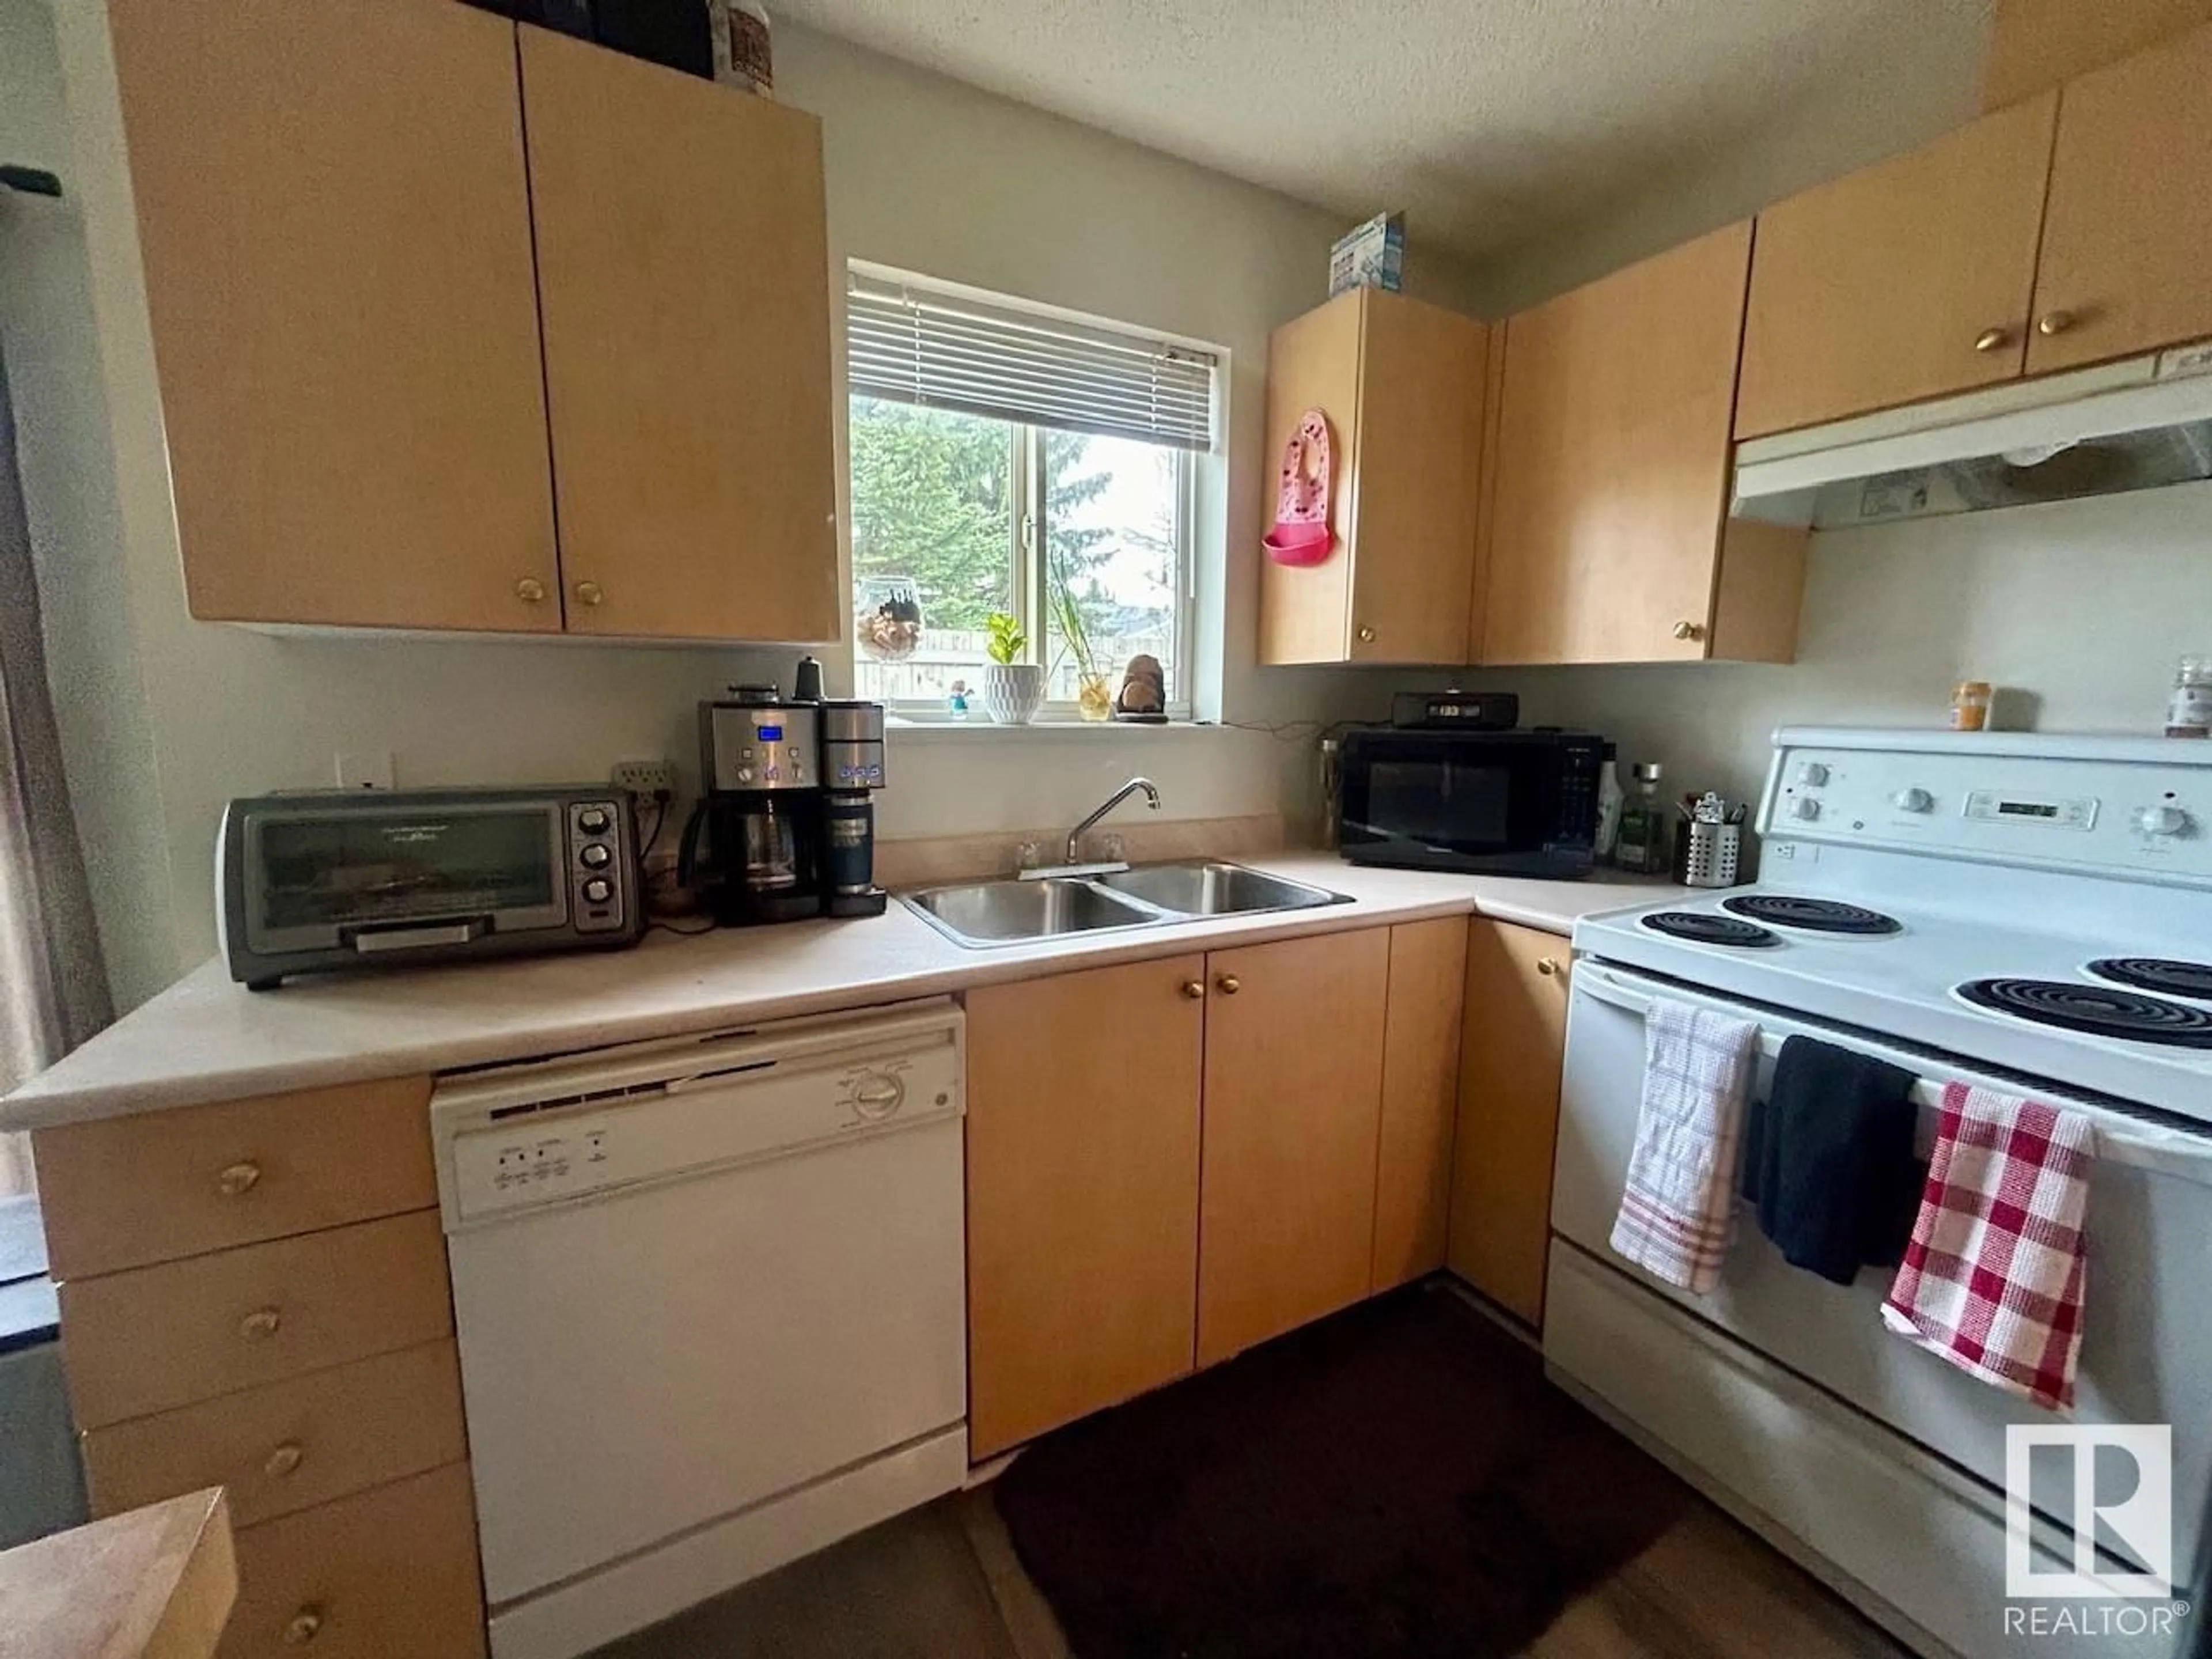 Standard kitchen for #906 610 KING ST, Spruce Grove Alberta T7X4J9